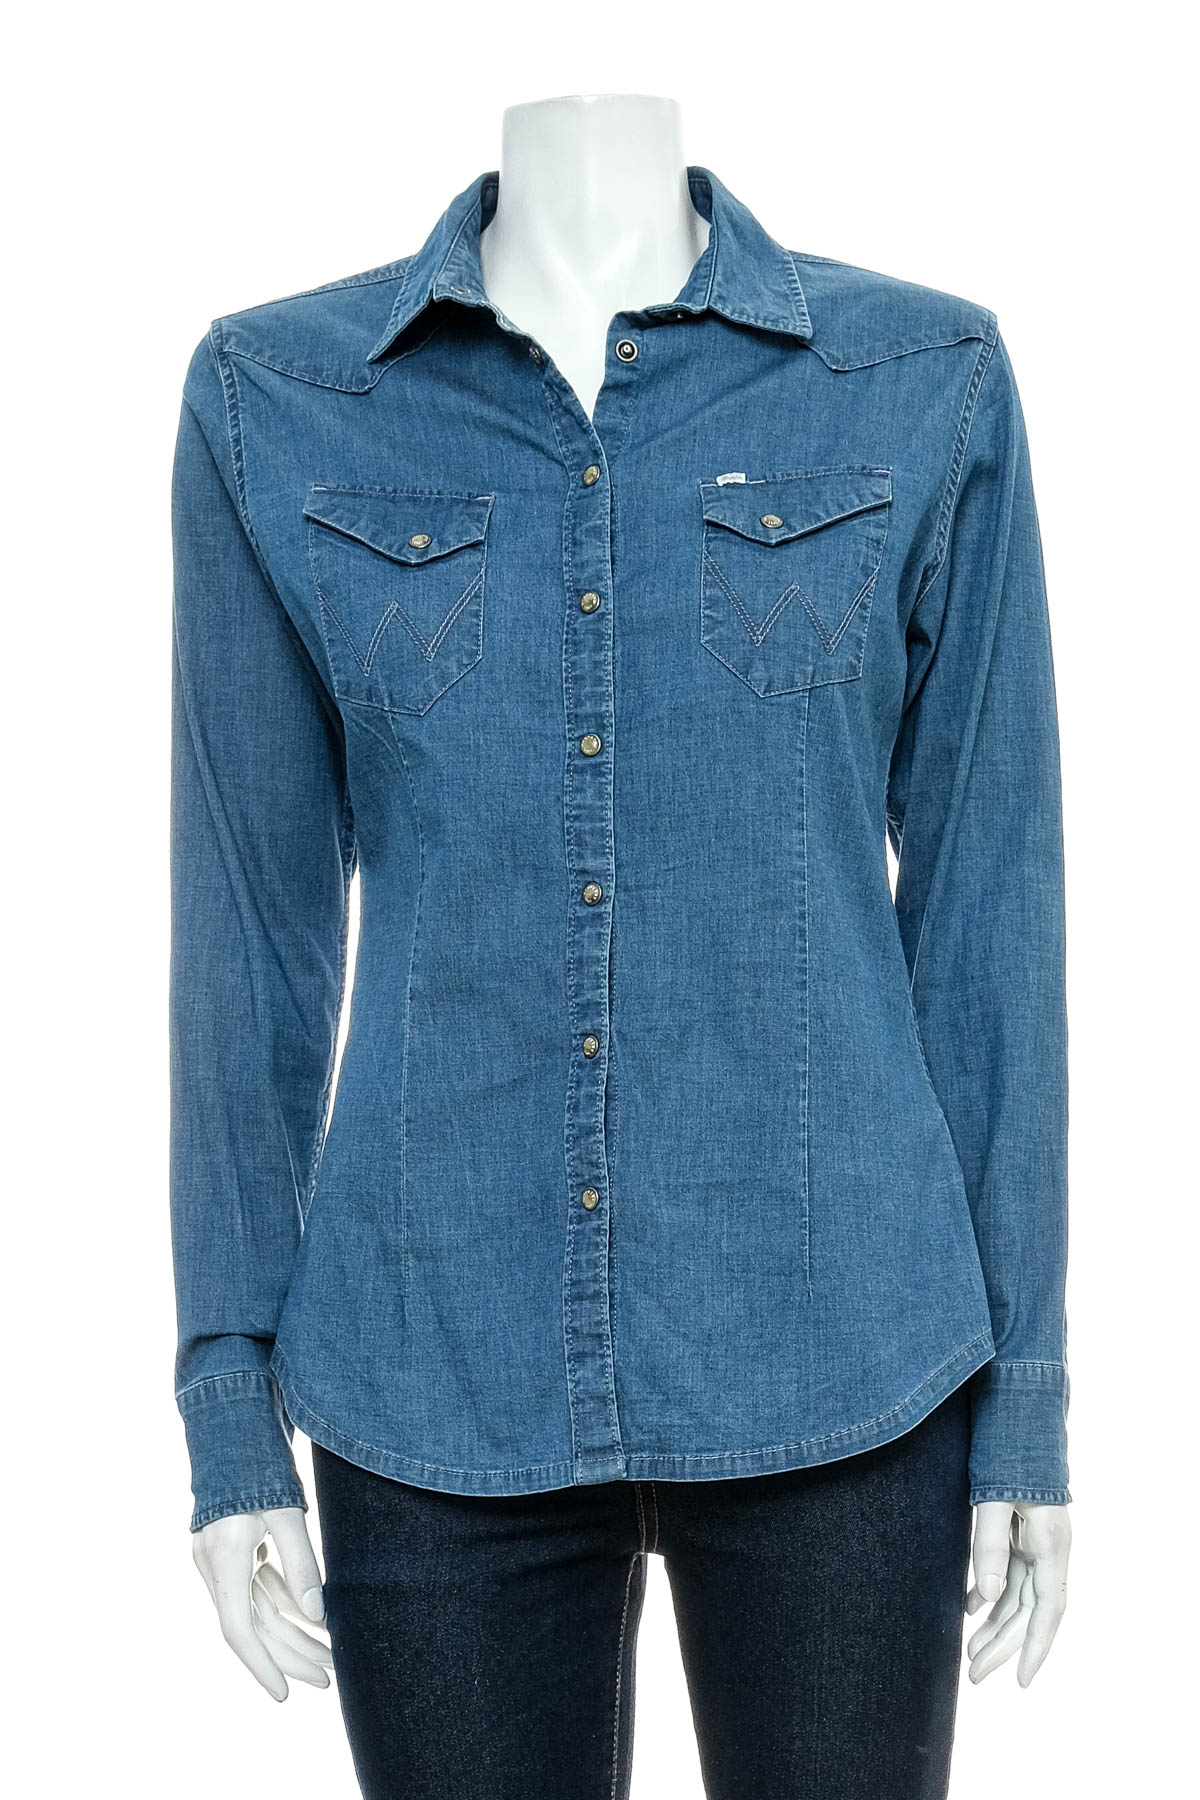 Γυναικείο τζιν πουκάμισο - Wrangler - 0